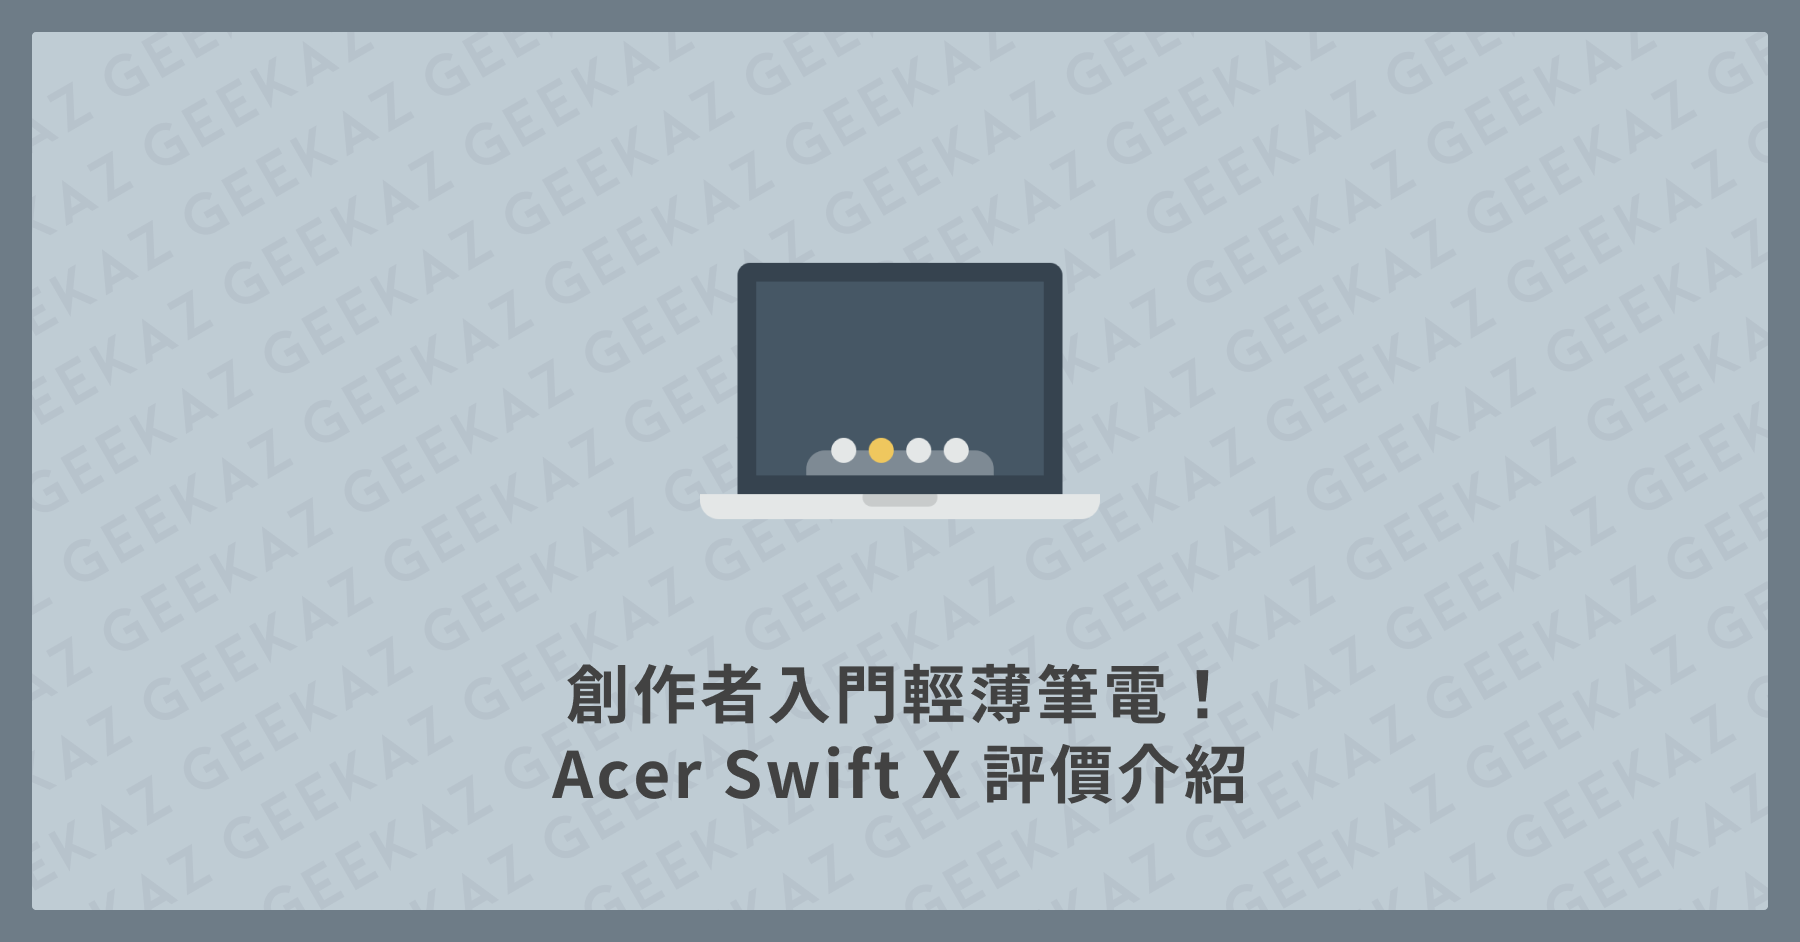 Acer Swift X 評價